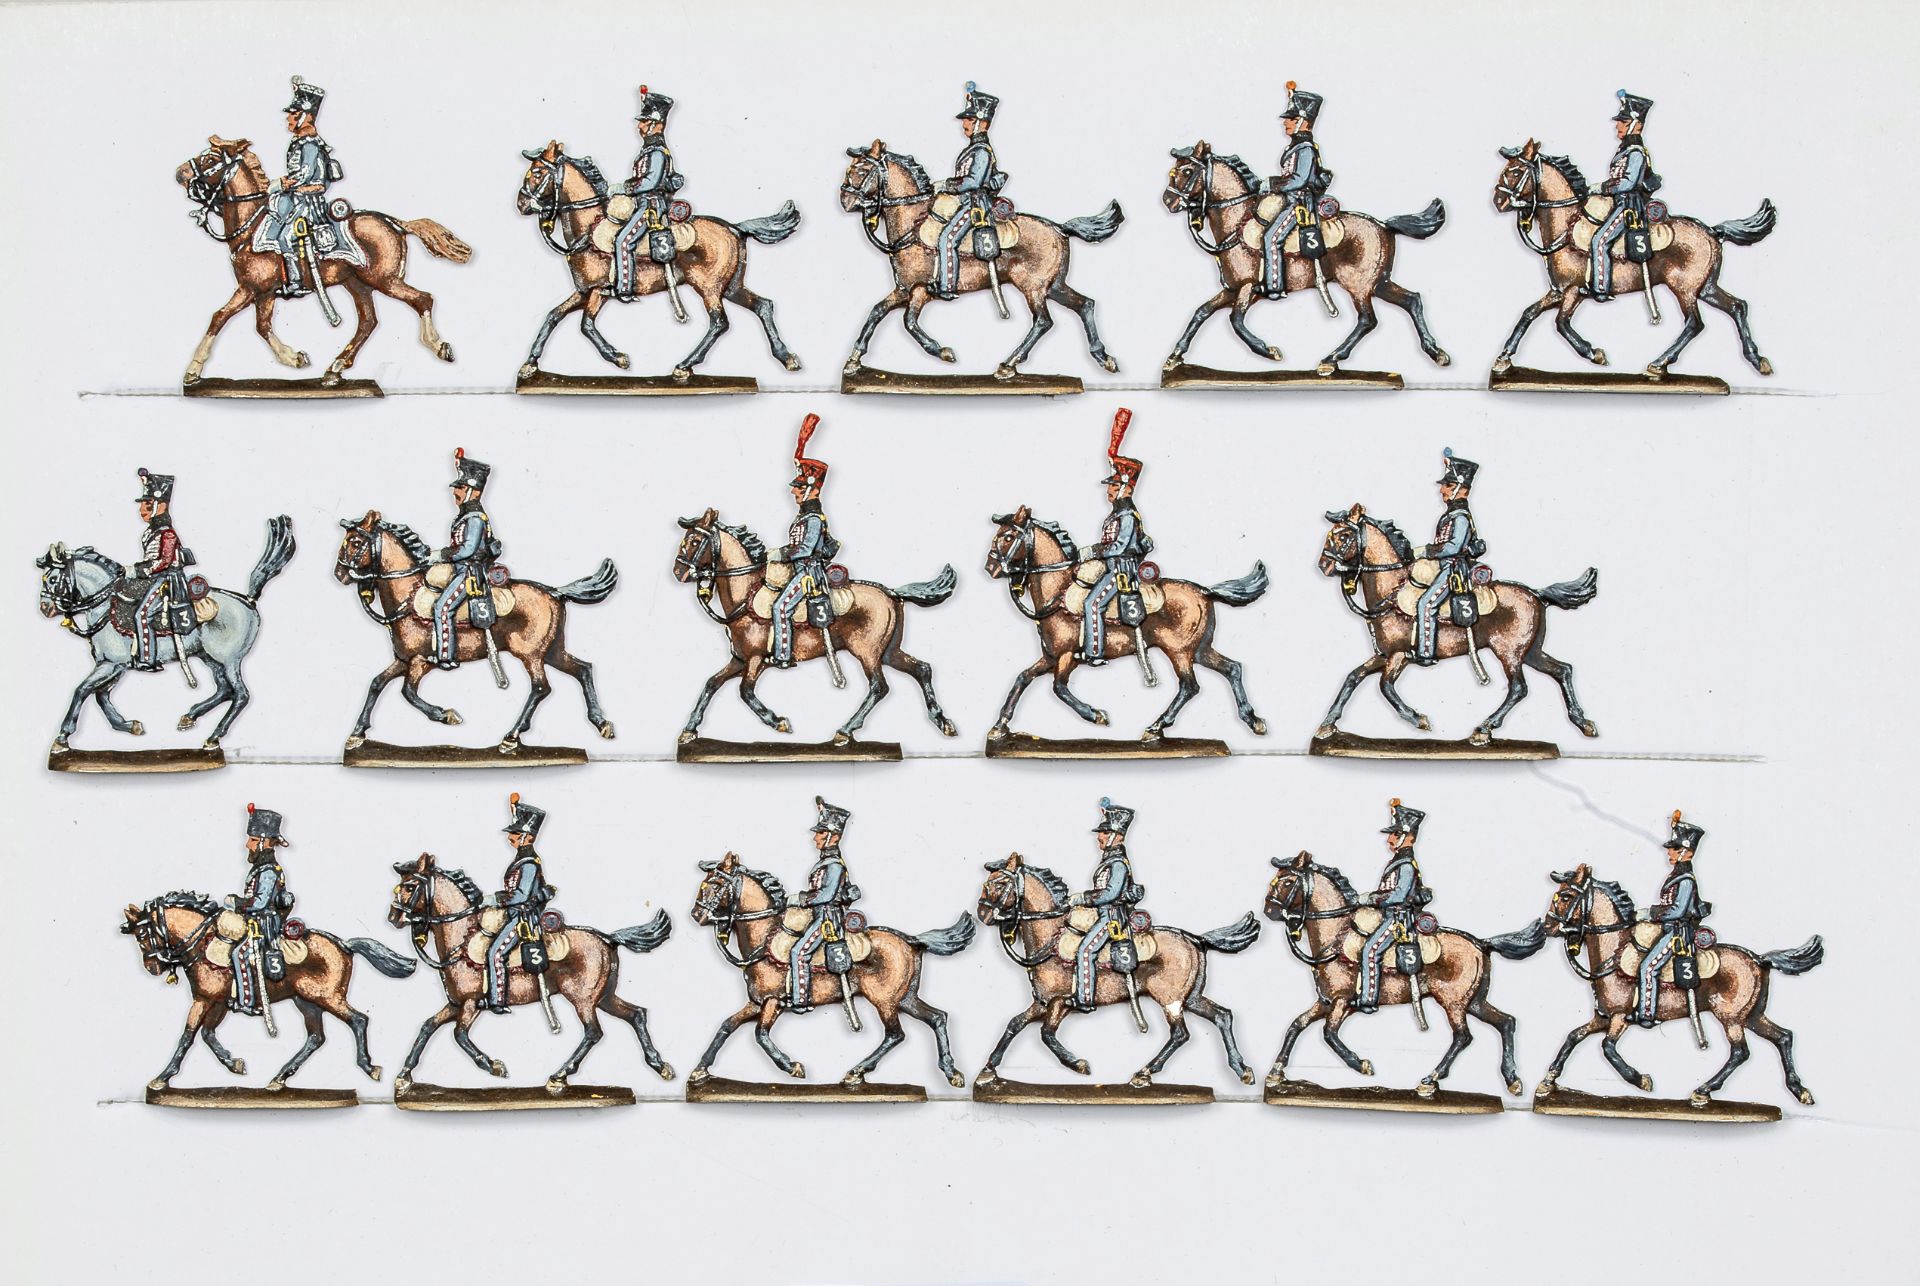 France - Cavalerie légère. Le 3ème régiment de hussards au trot. 1 officier, 1 trompette, 14 soldats